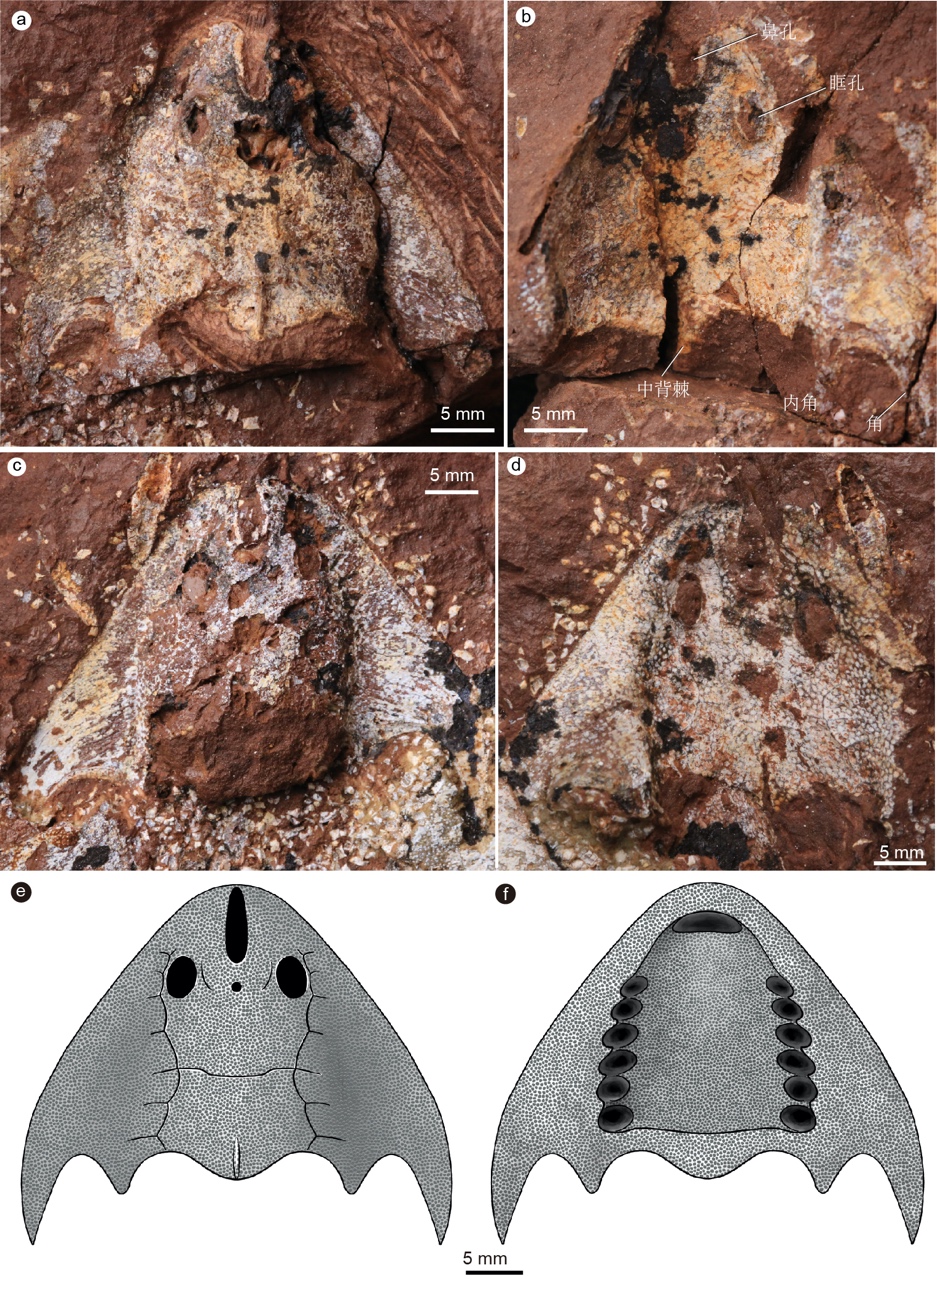 研究团队新发现的两个新属种化石,均出自江西武宁志留纪地层